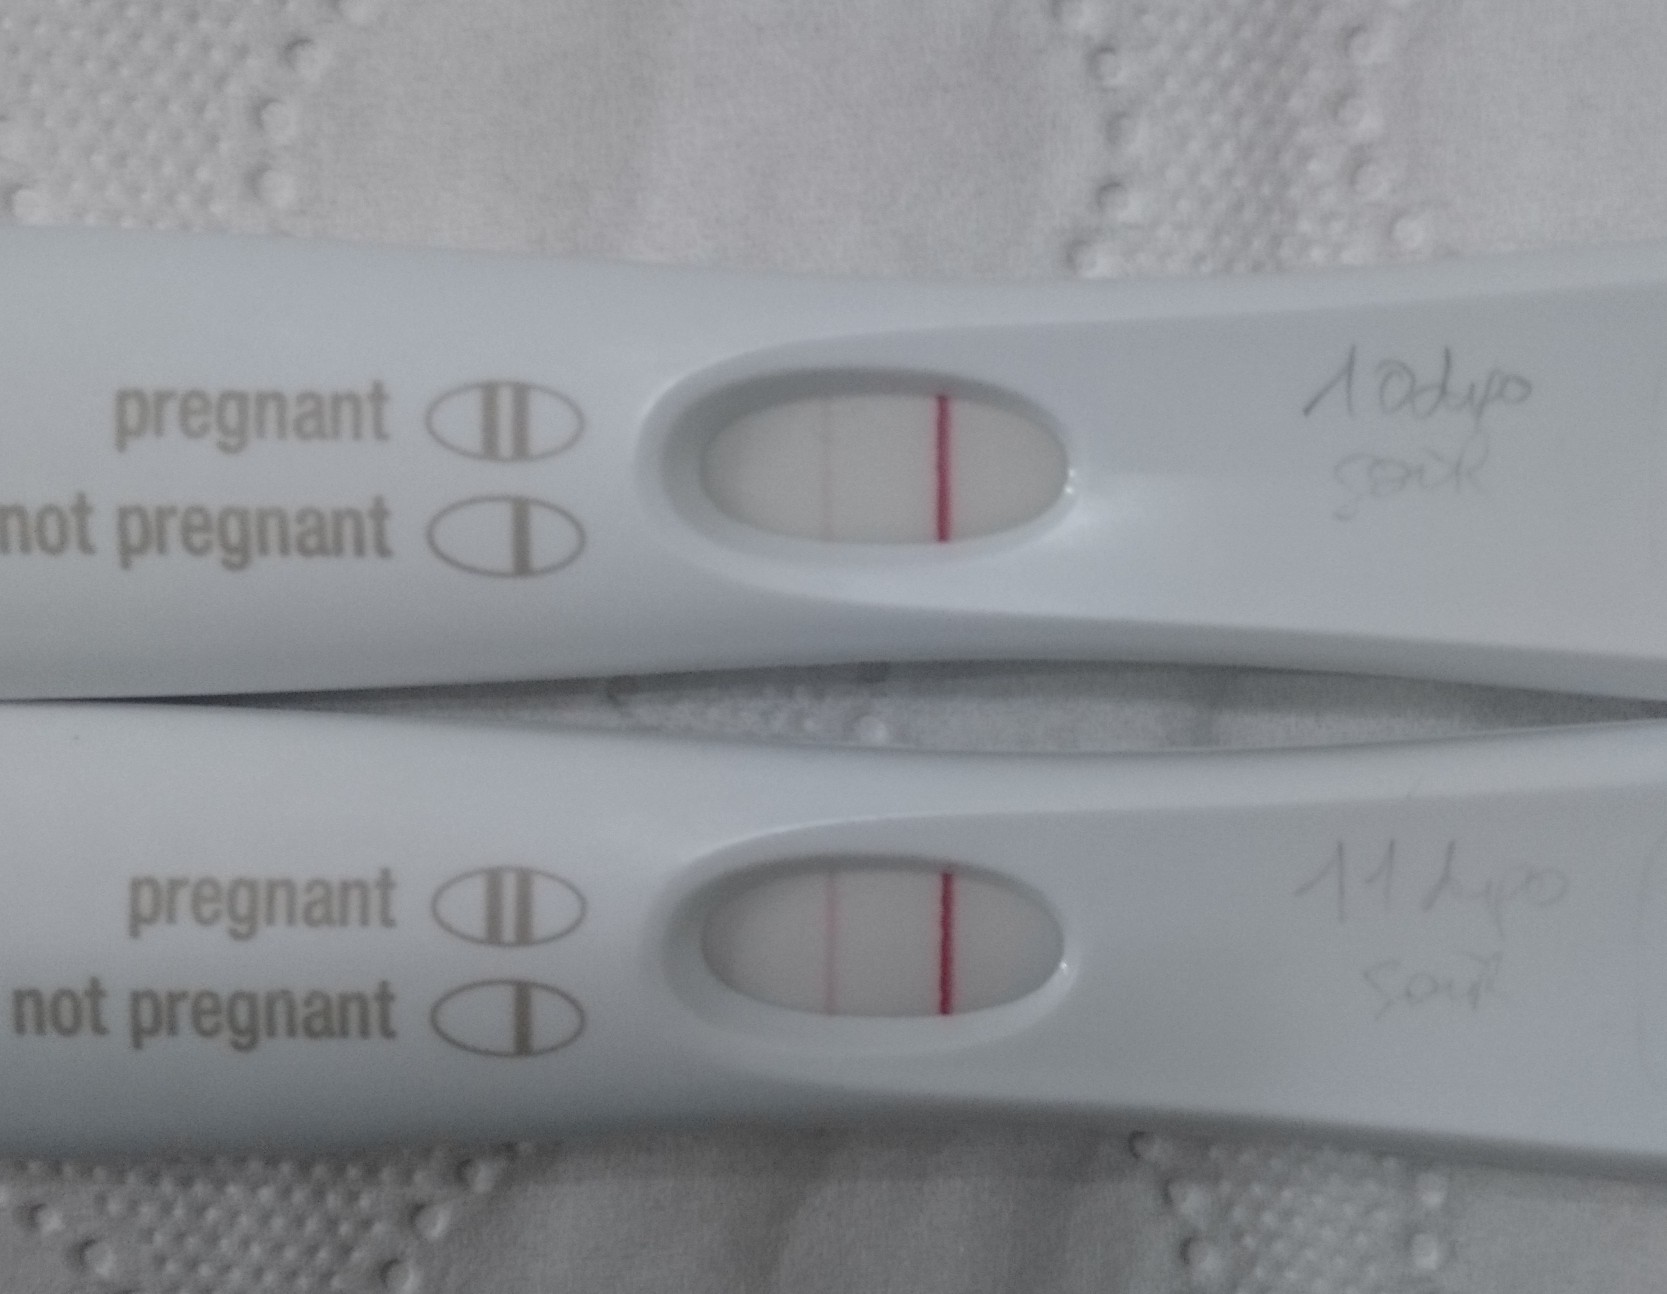 Vos tests à 10 /11DPO - Tests et symptômes de grossesse - FORUM ...